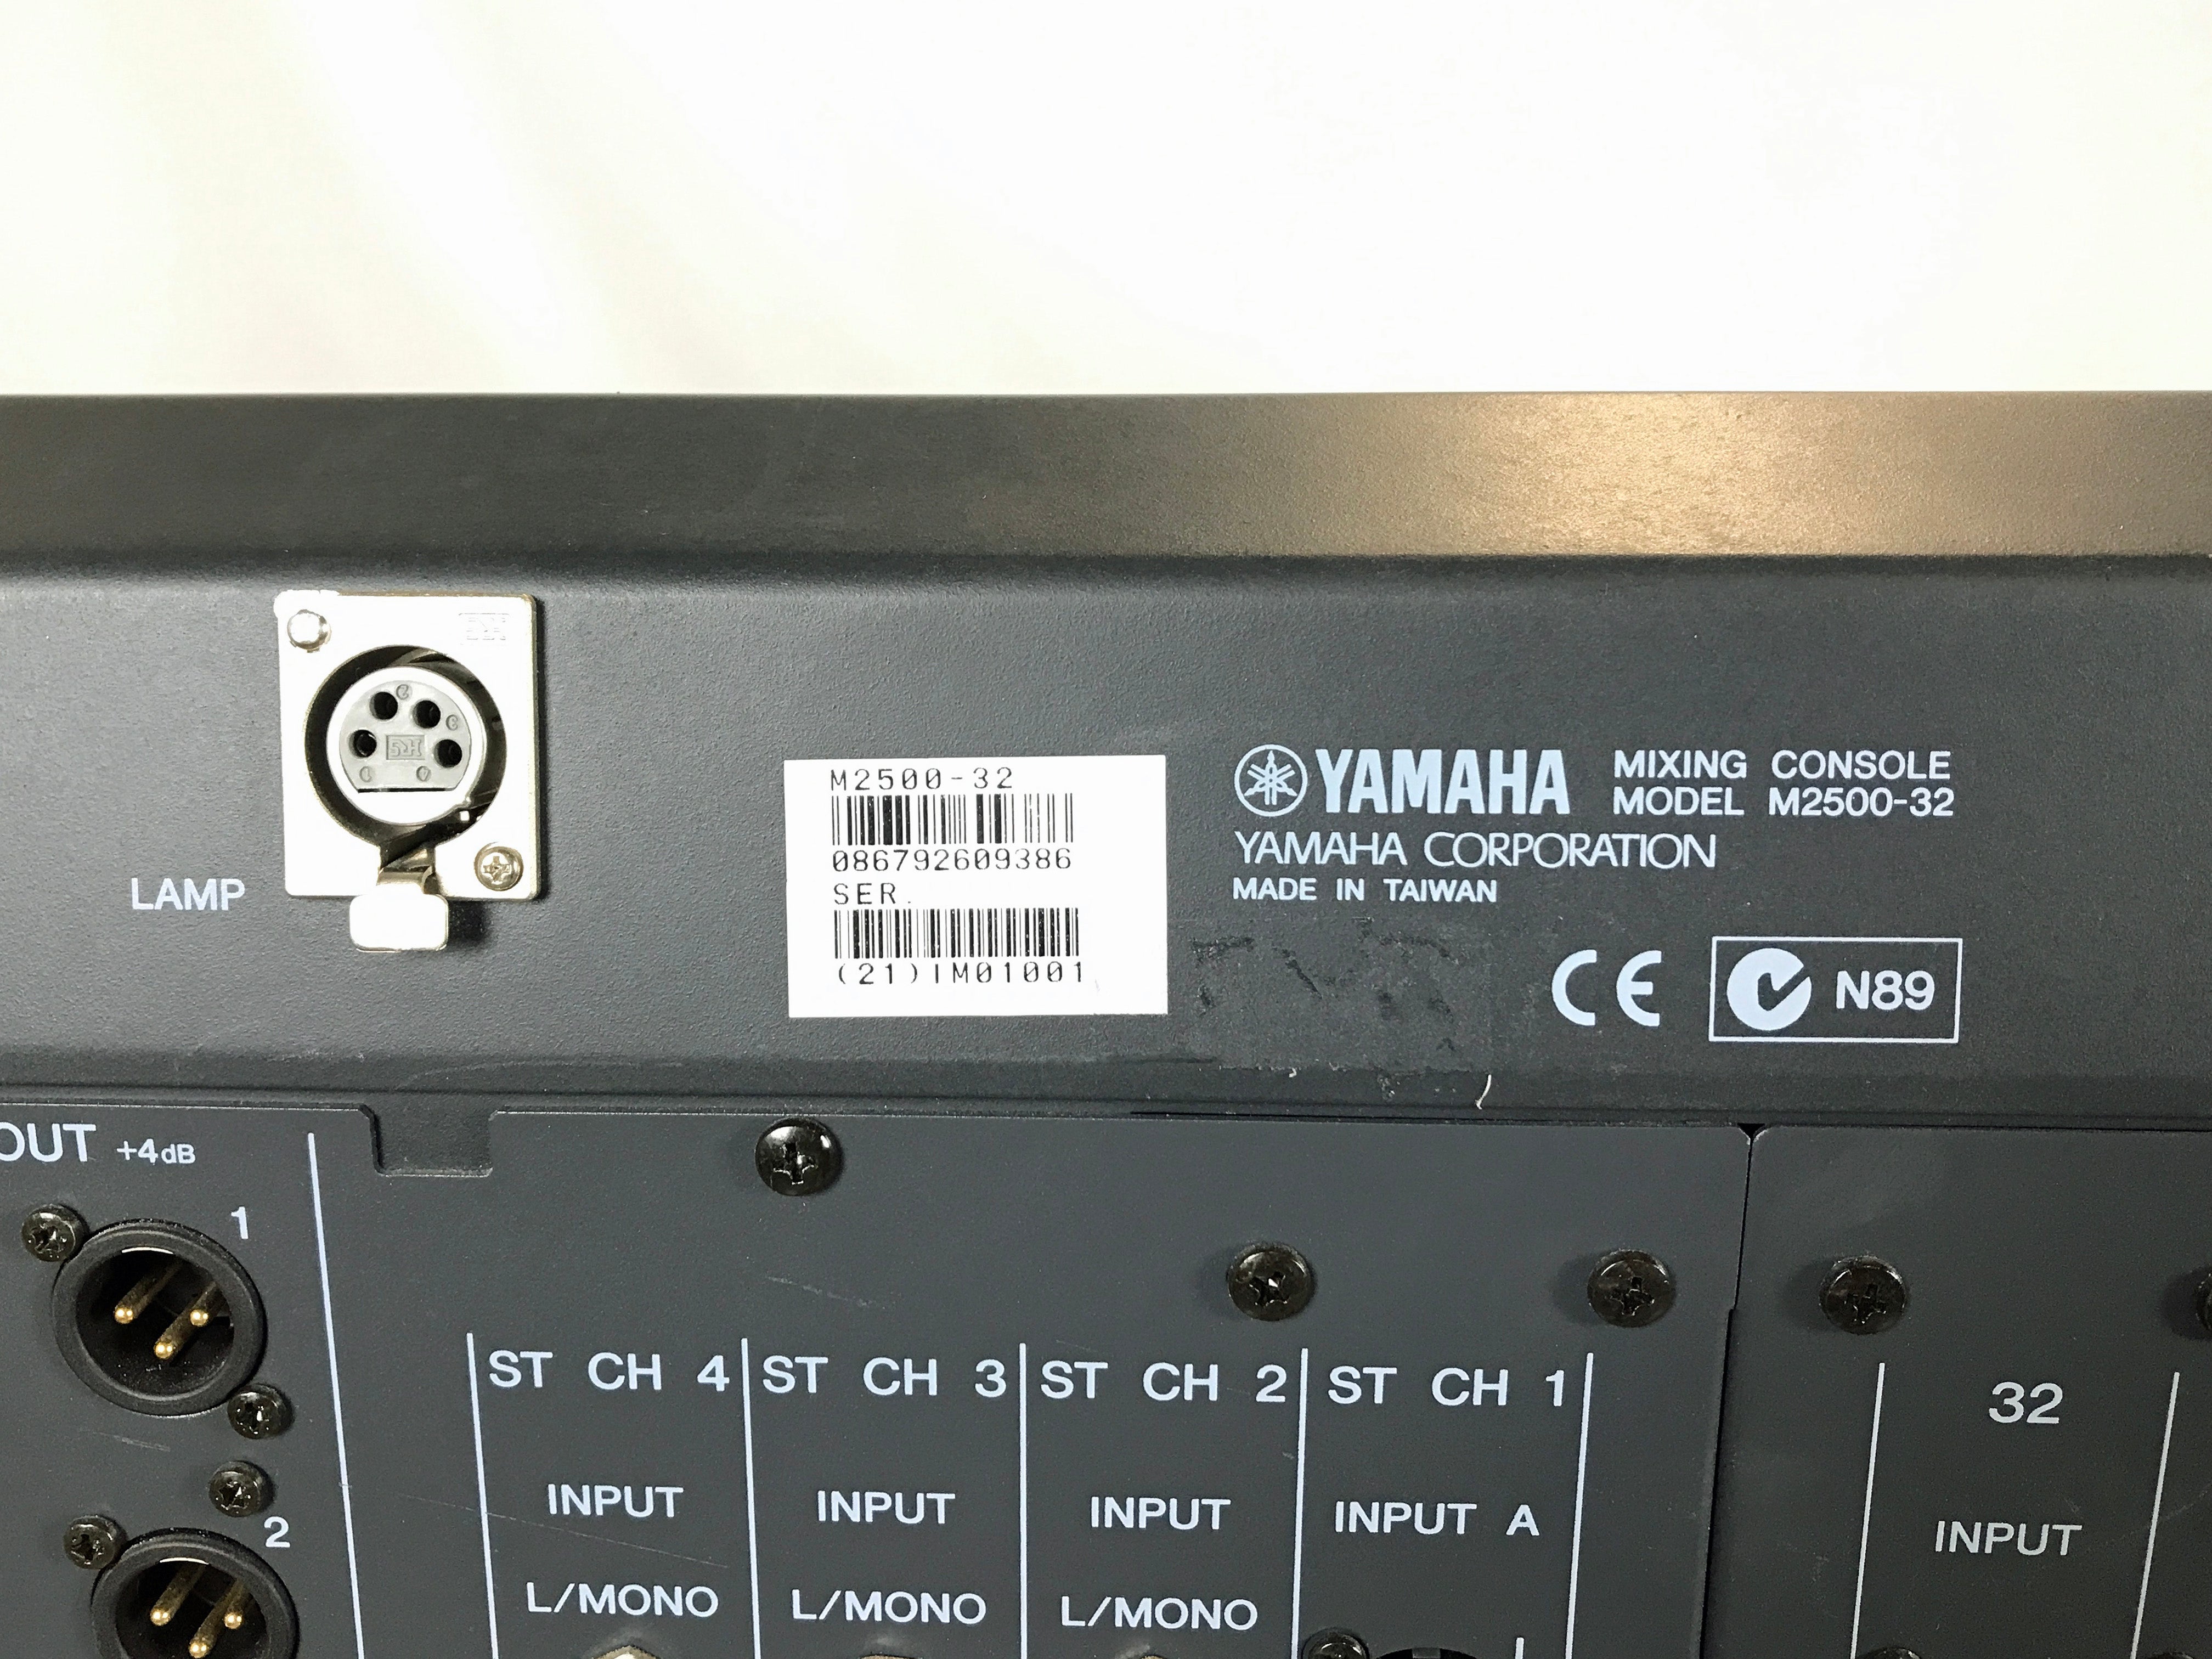 Yamaha M2500-32 Mixing Console w/ Yamaha PW3000MA Power Supply